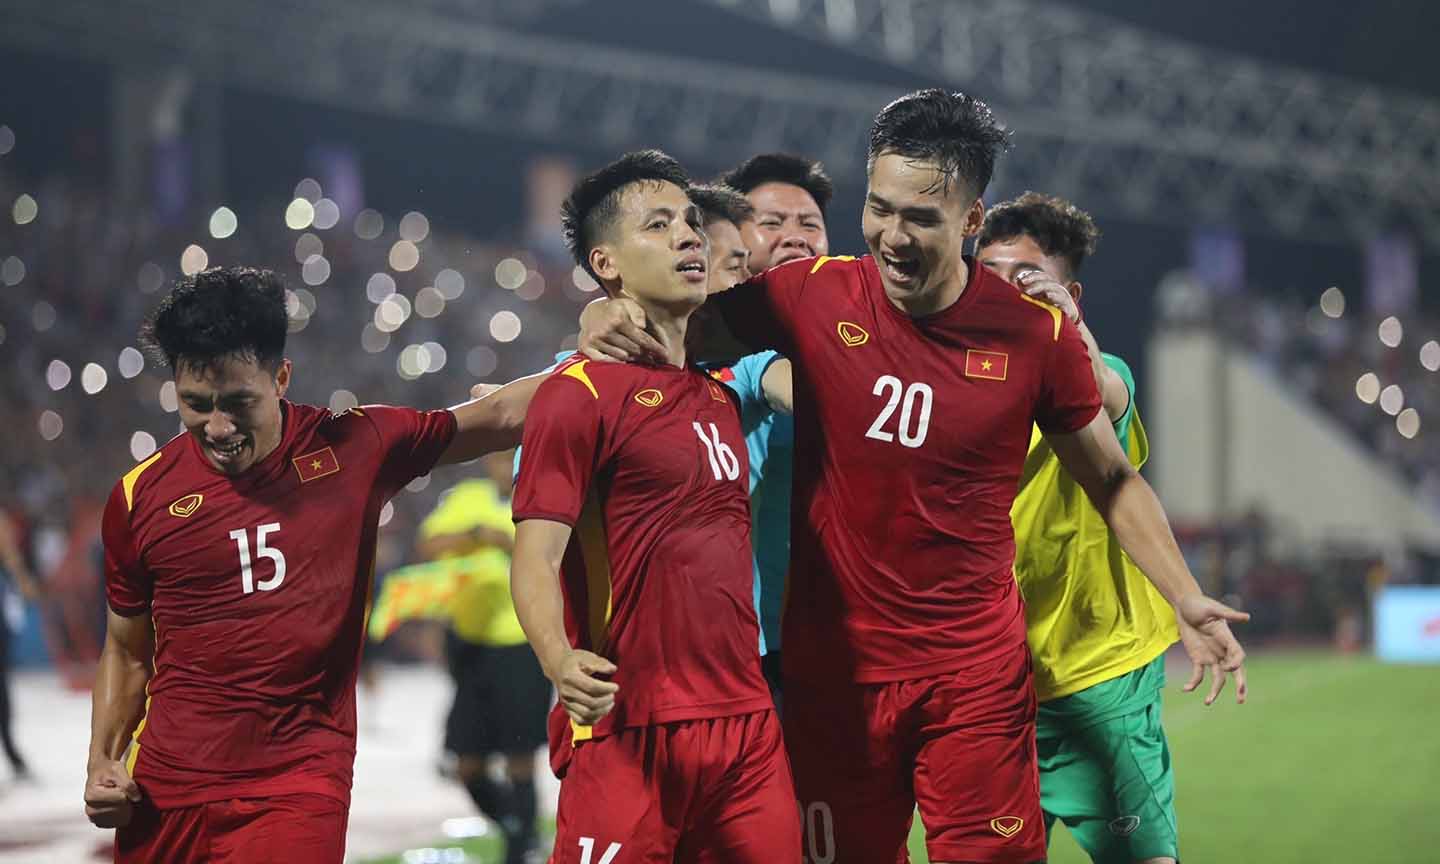 Hùng Dũng ghi bàn thắng duy nhất mang về chiến thắng giúp Đội tuyển Việt Nam giành lợi thế lớn trong cuộc đua giành ngôi đầu bảng A.